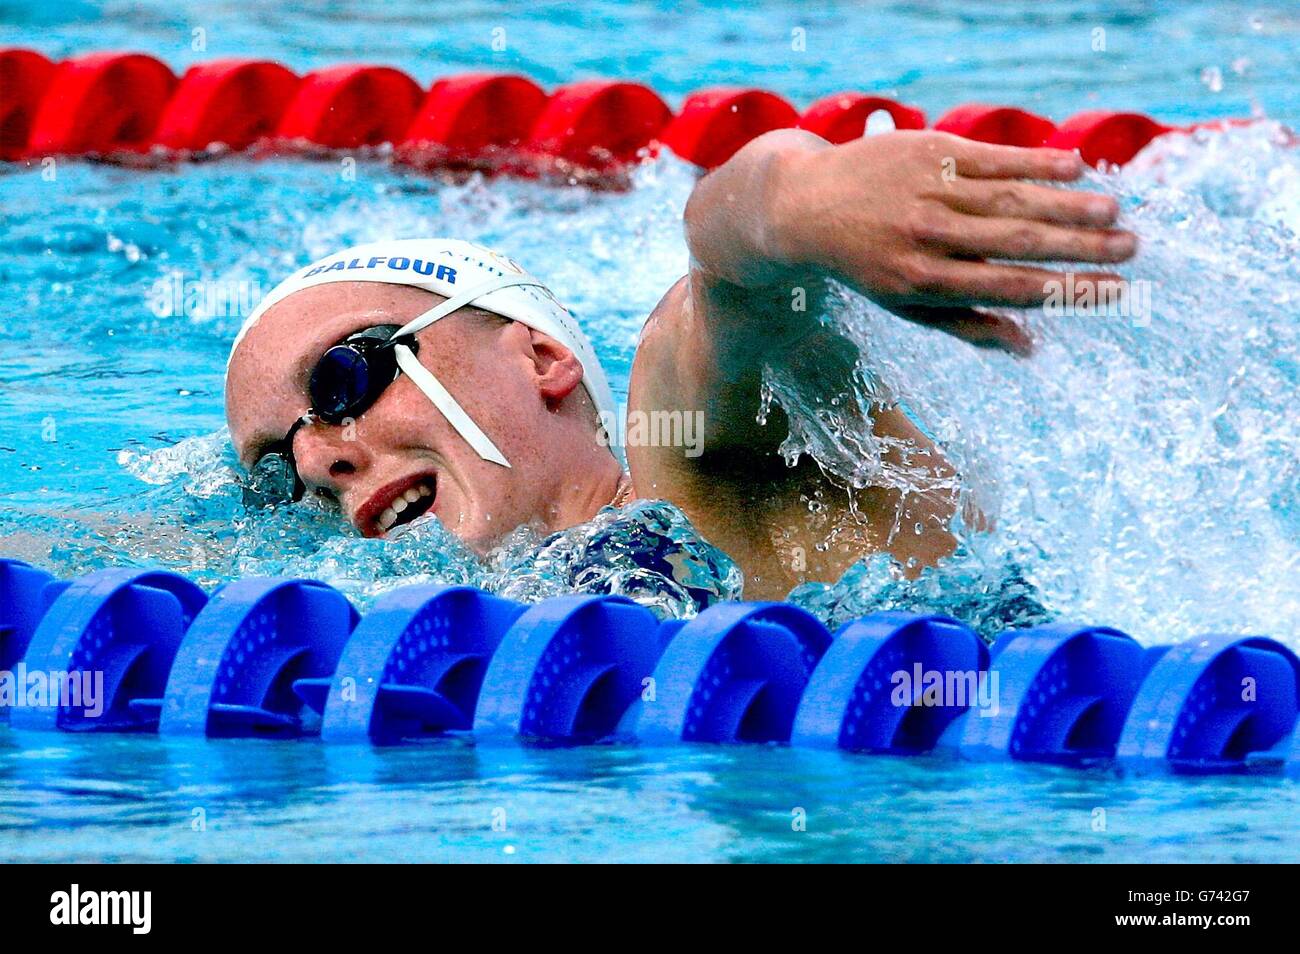 Kirsty Balfour Jeux olympiques d'Athènes 2004.Kirsty Balfour, Grande-Bretagne, pratique pendant la séance ouverte au centre aquatique d'Athènes. Banque D'Images